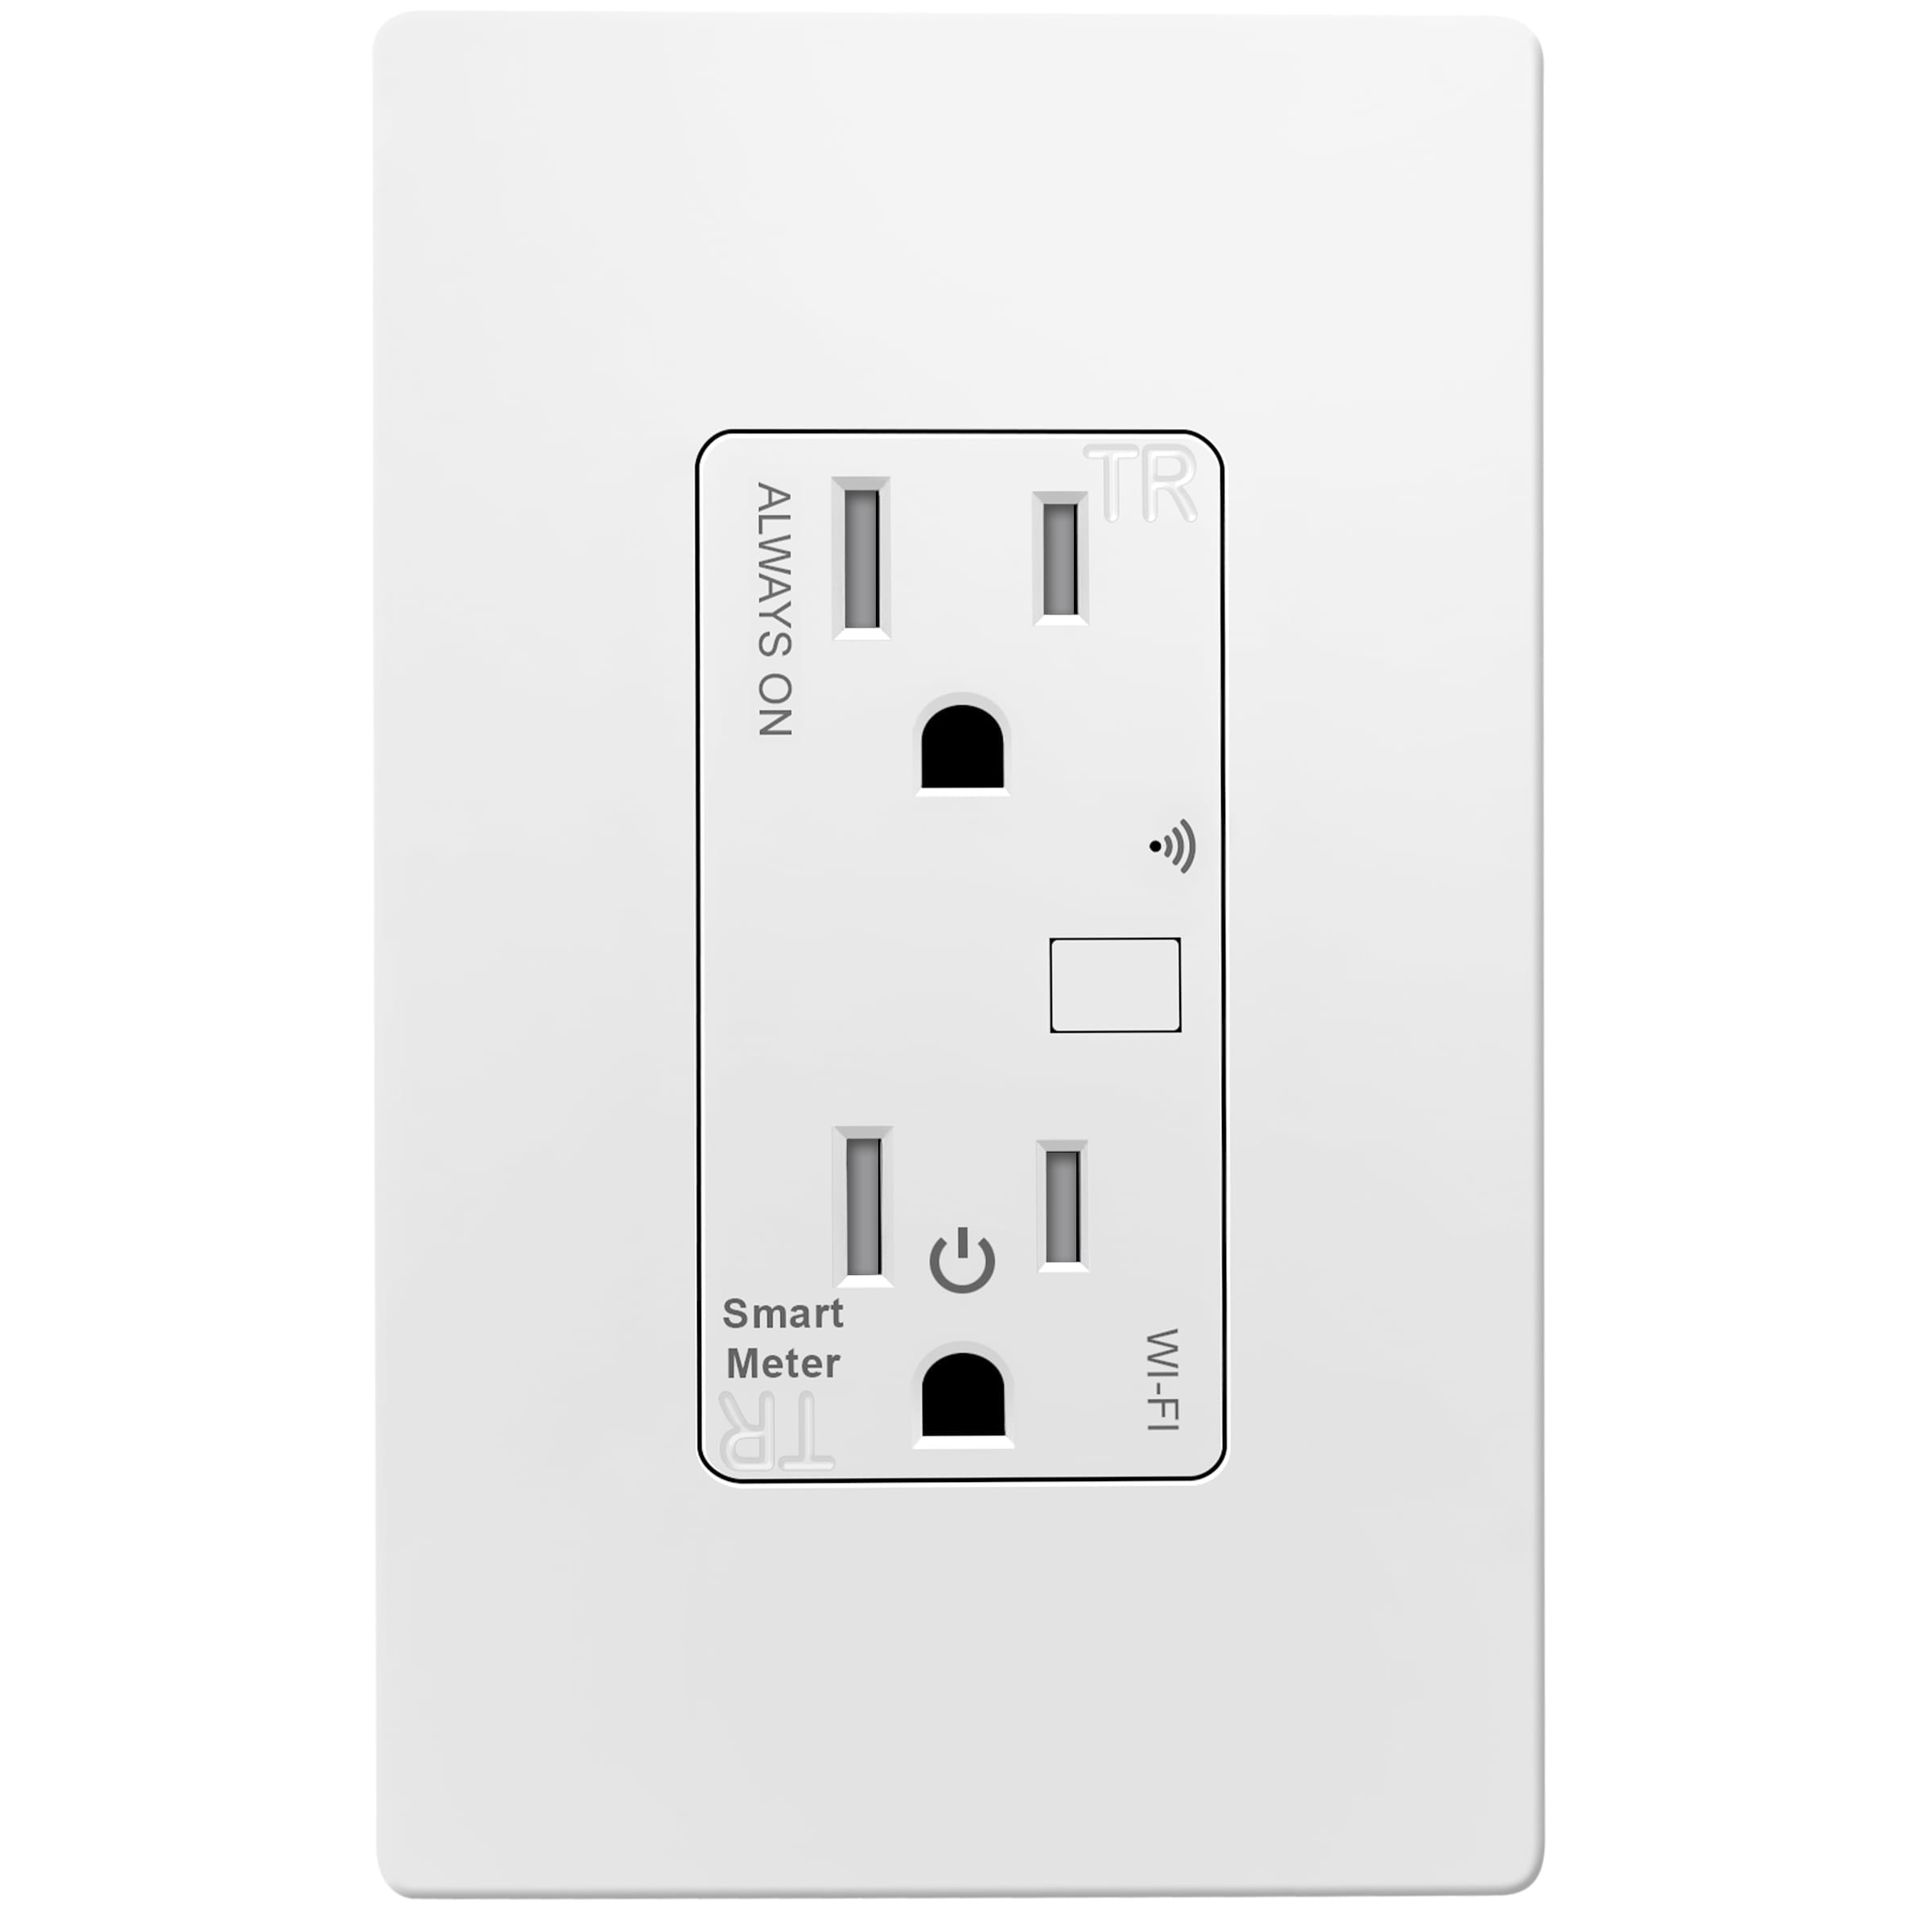 Consumo de energía Monitor de seguridad Inicio Security Smart Home UE Plug Smart Power Plug 